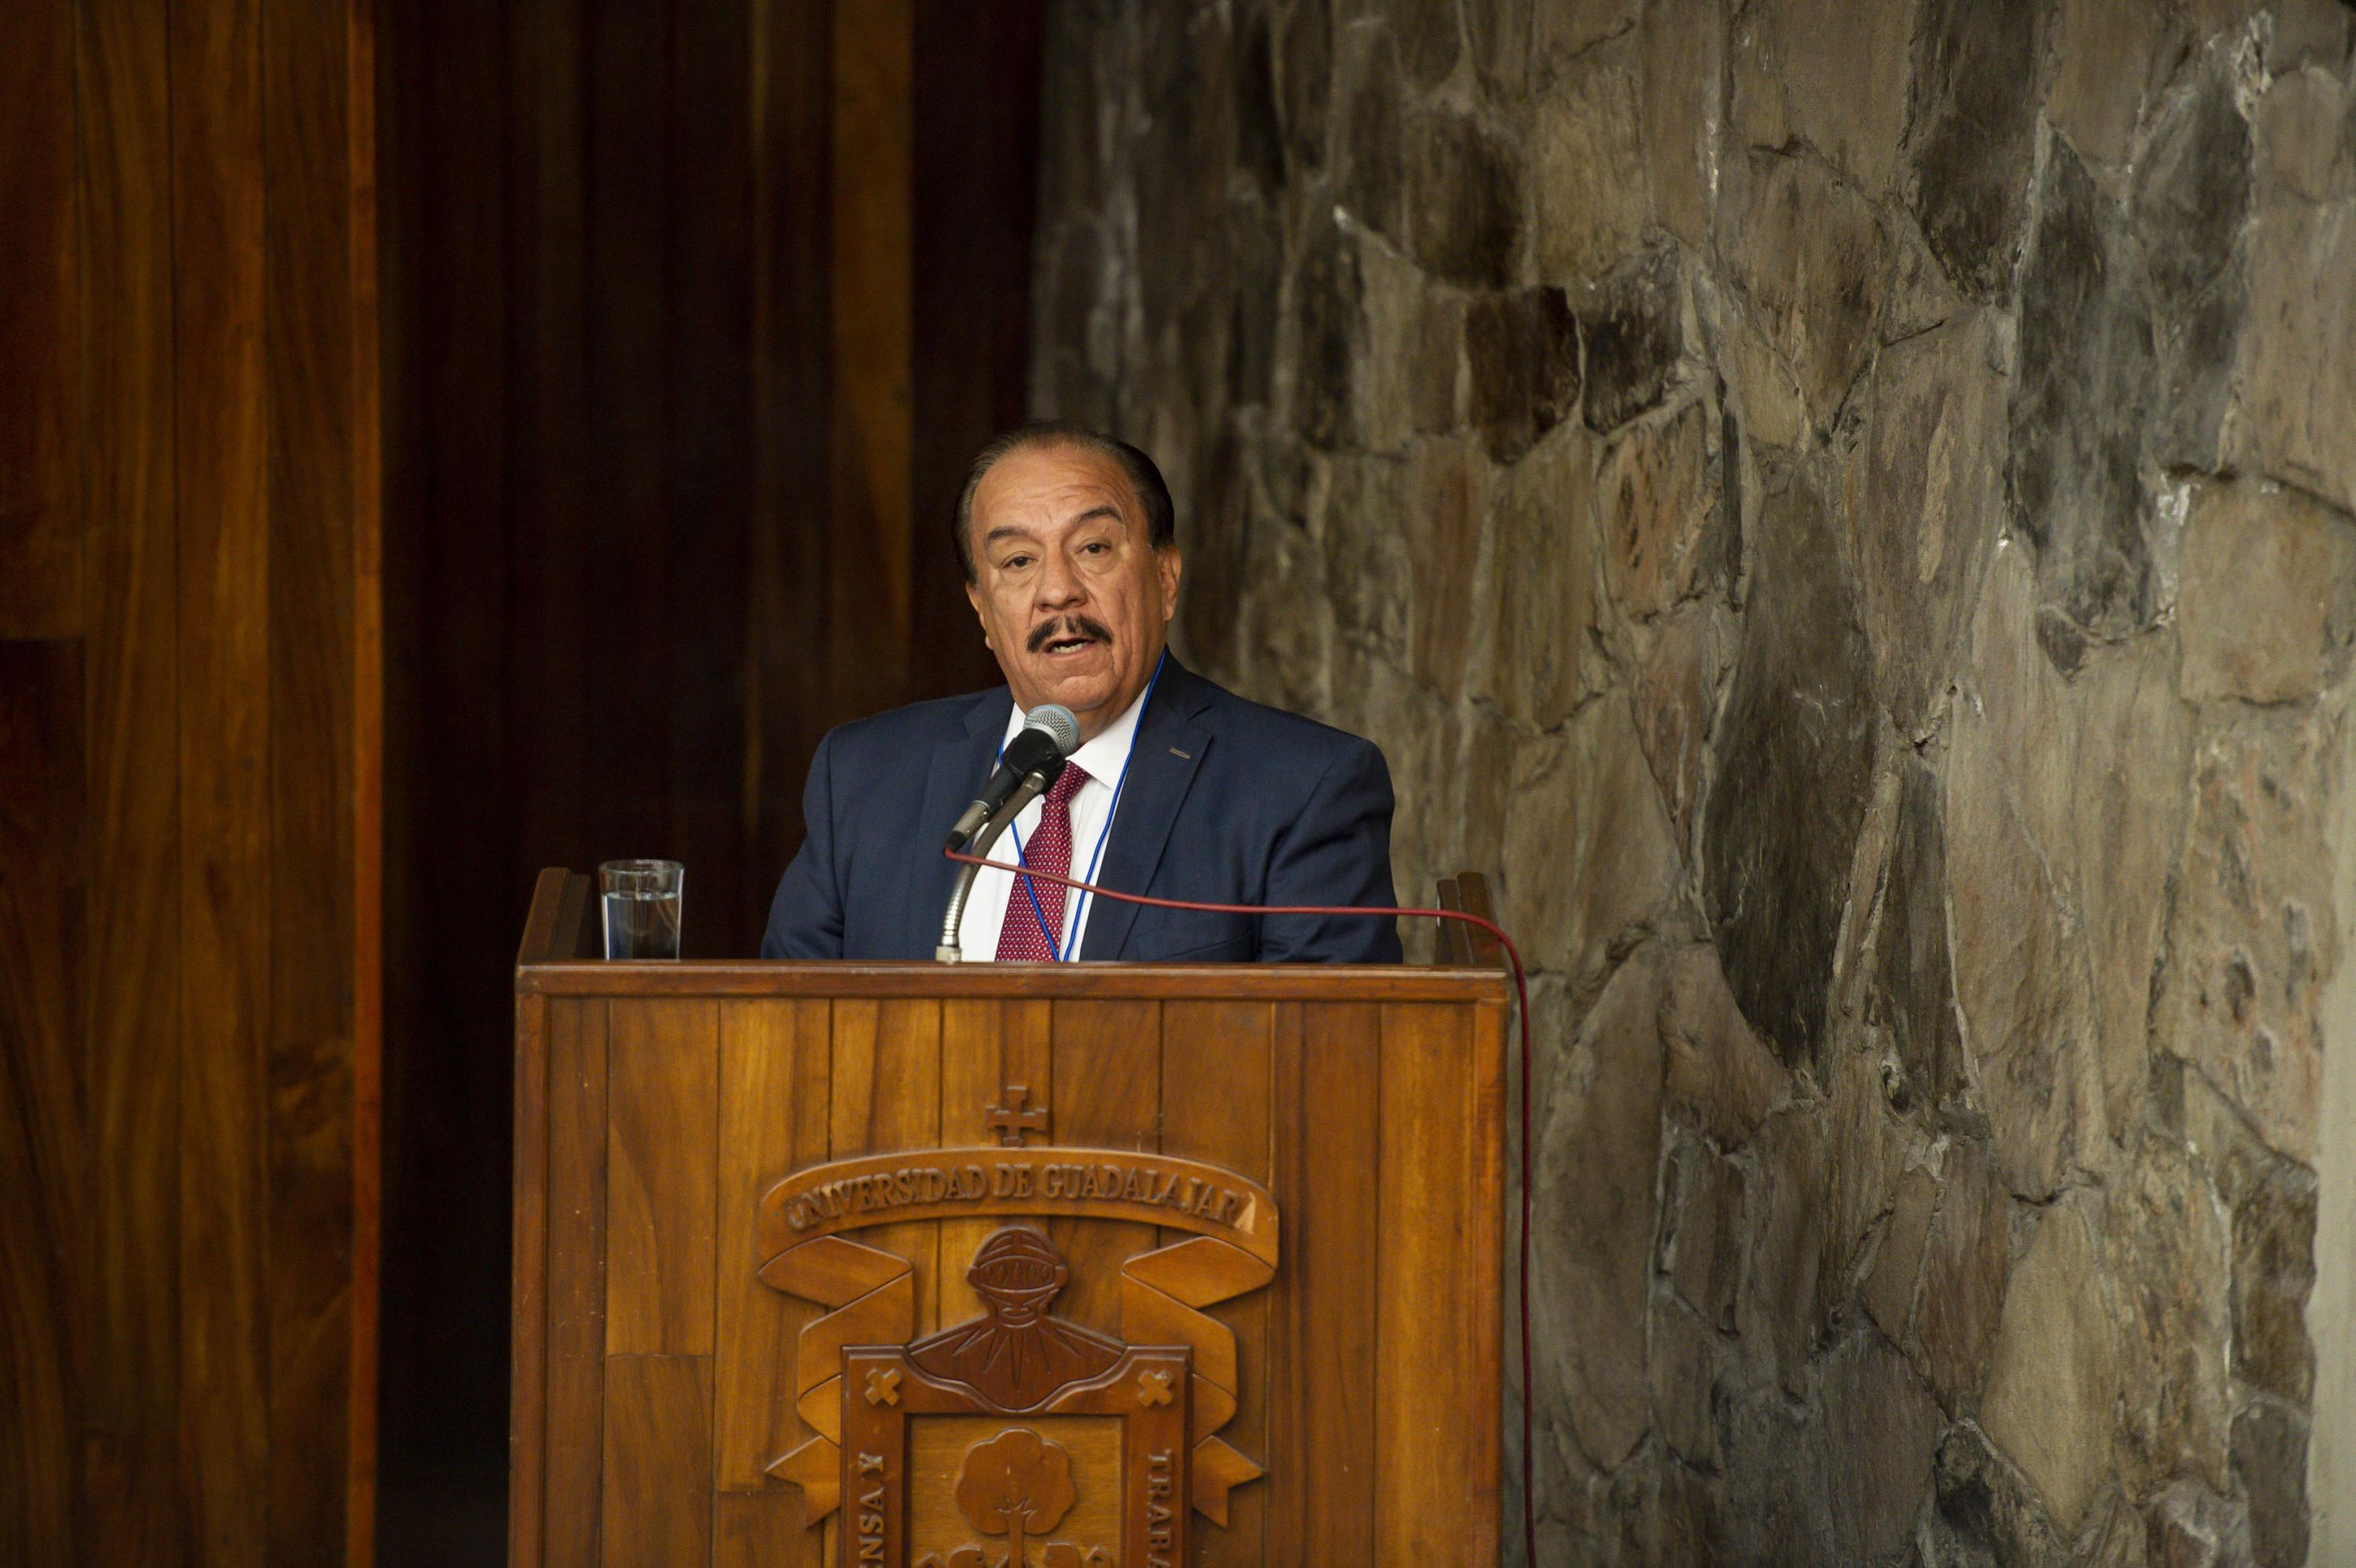 El Presidente de la Academia Mexicana de Desarrollo Urbano (Amdeur), doctor Luis Antonio Rocha Santos, en uso de la Palabra